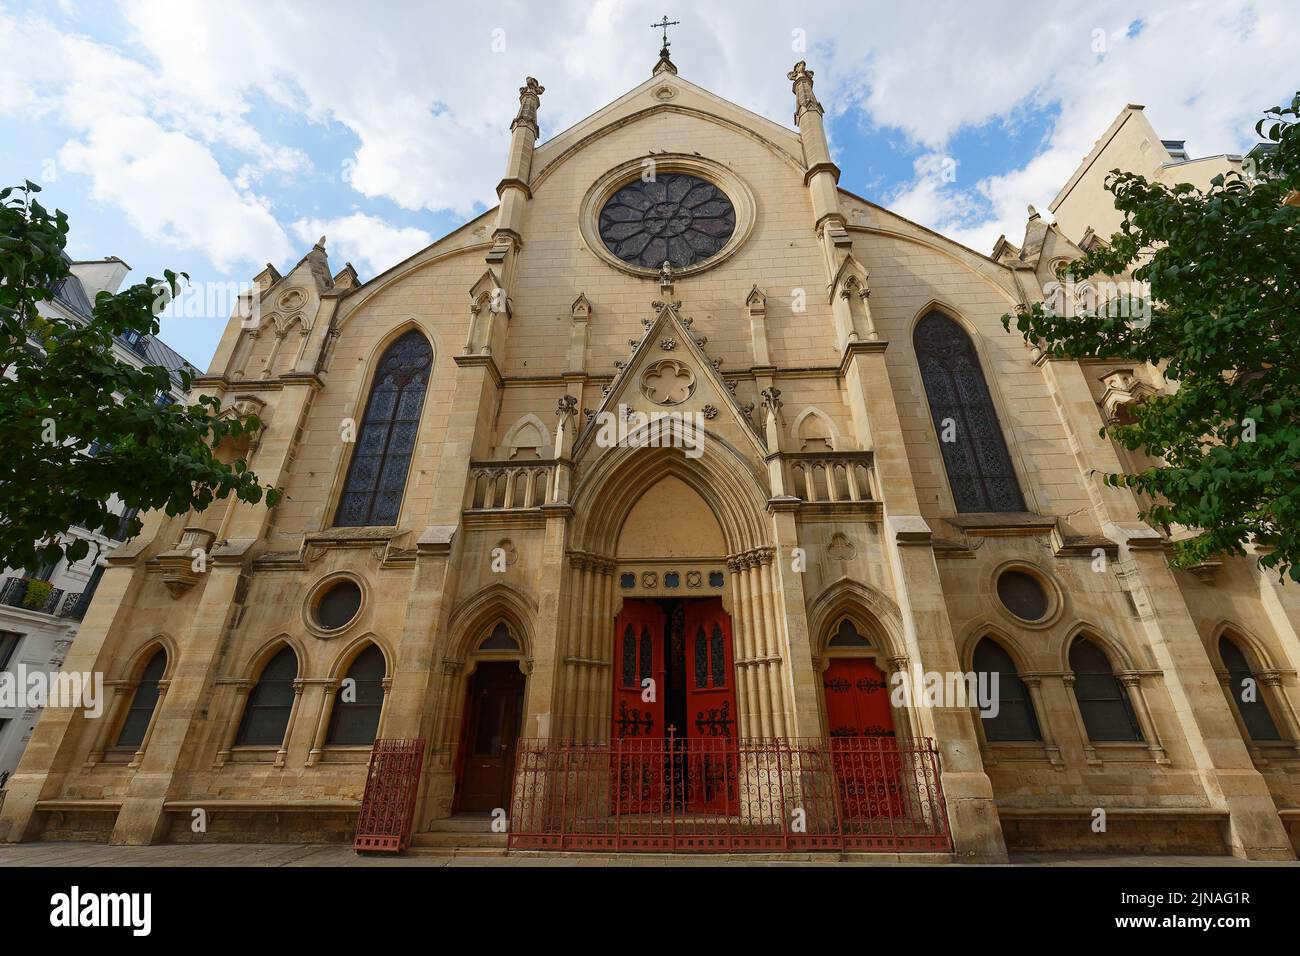 Saint-Eugene-Sainte-Cecile es una iglesia católica situada en el distrito 9th de París. Francia. Foto de stock